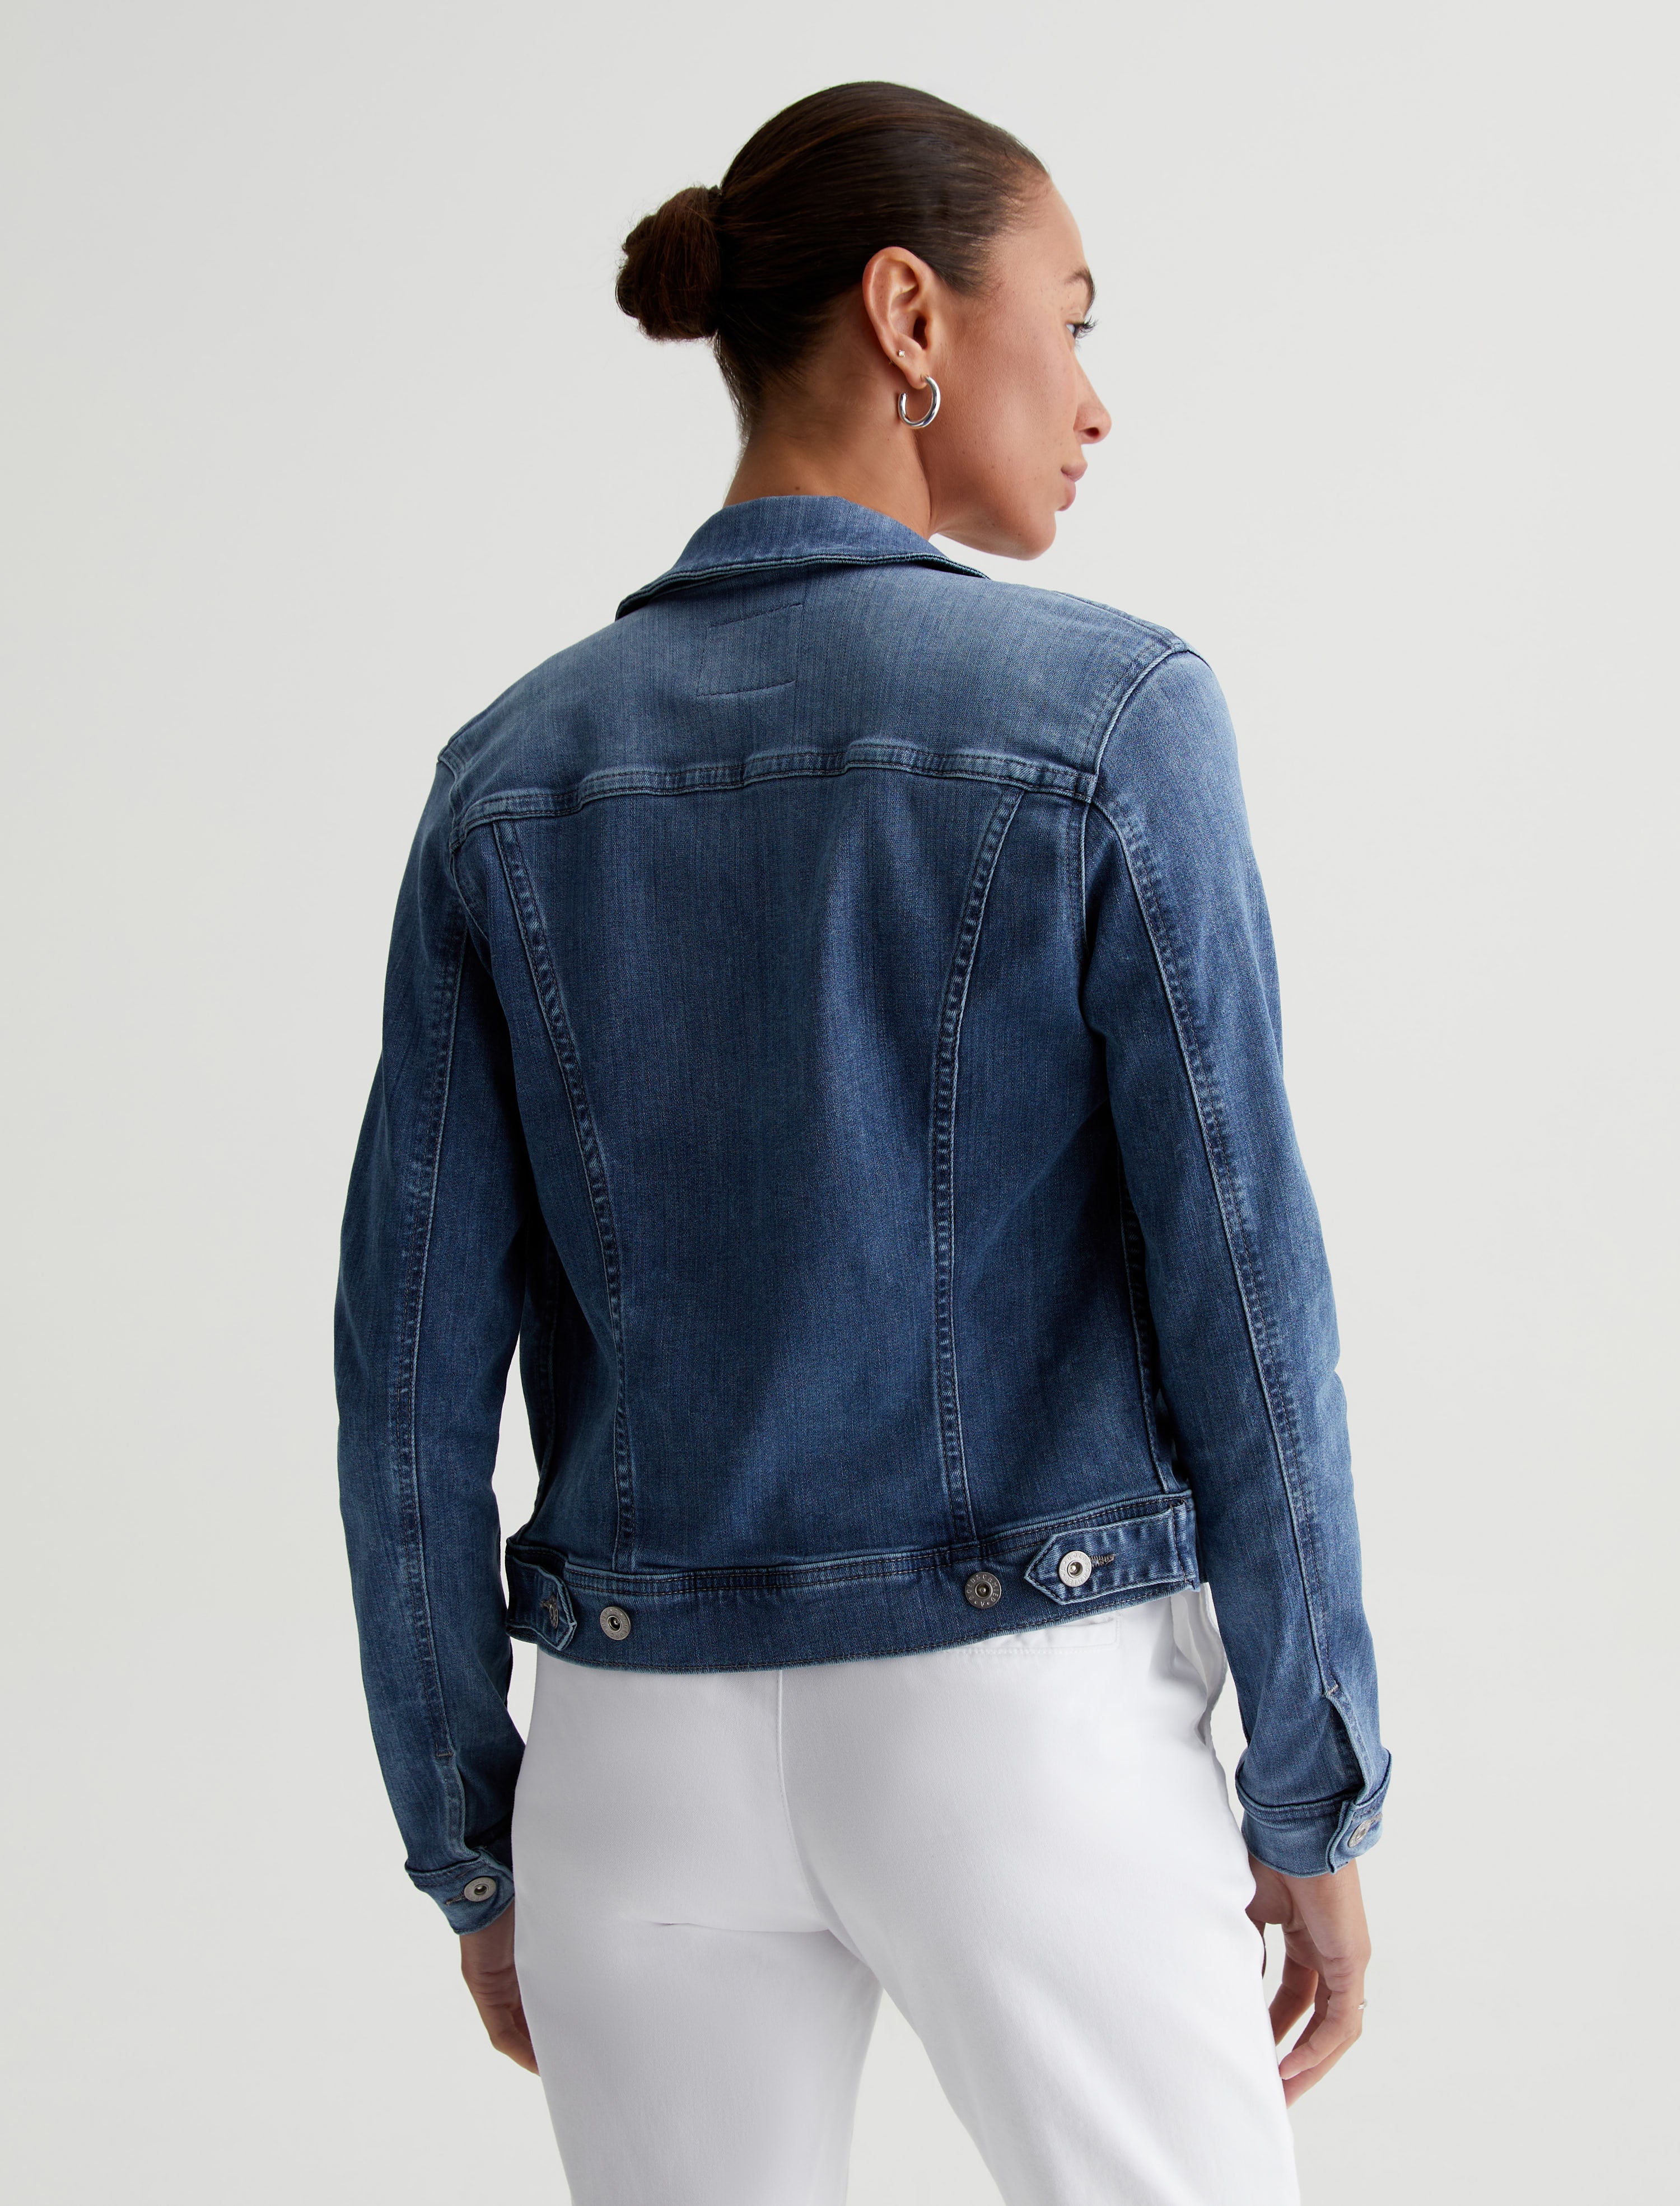 Buy Roadster Women Blue Washed Denim Jacket - Jackets for Women 12178124 |  Myntra